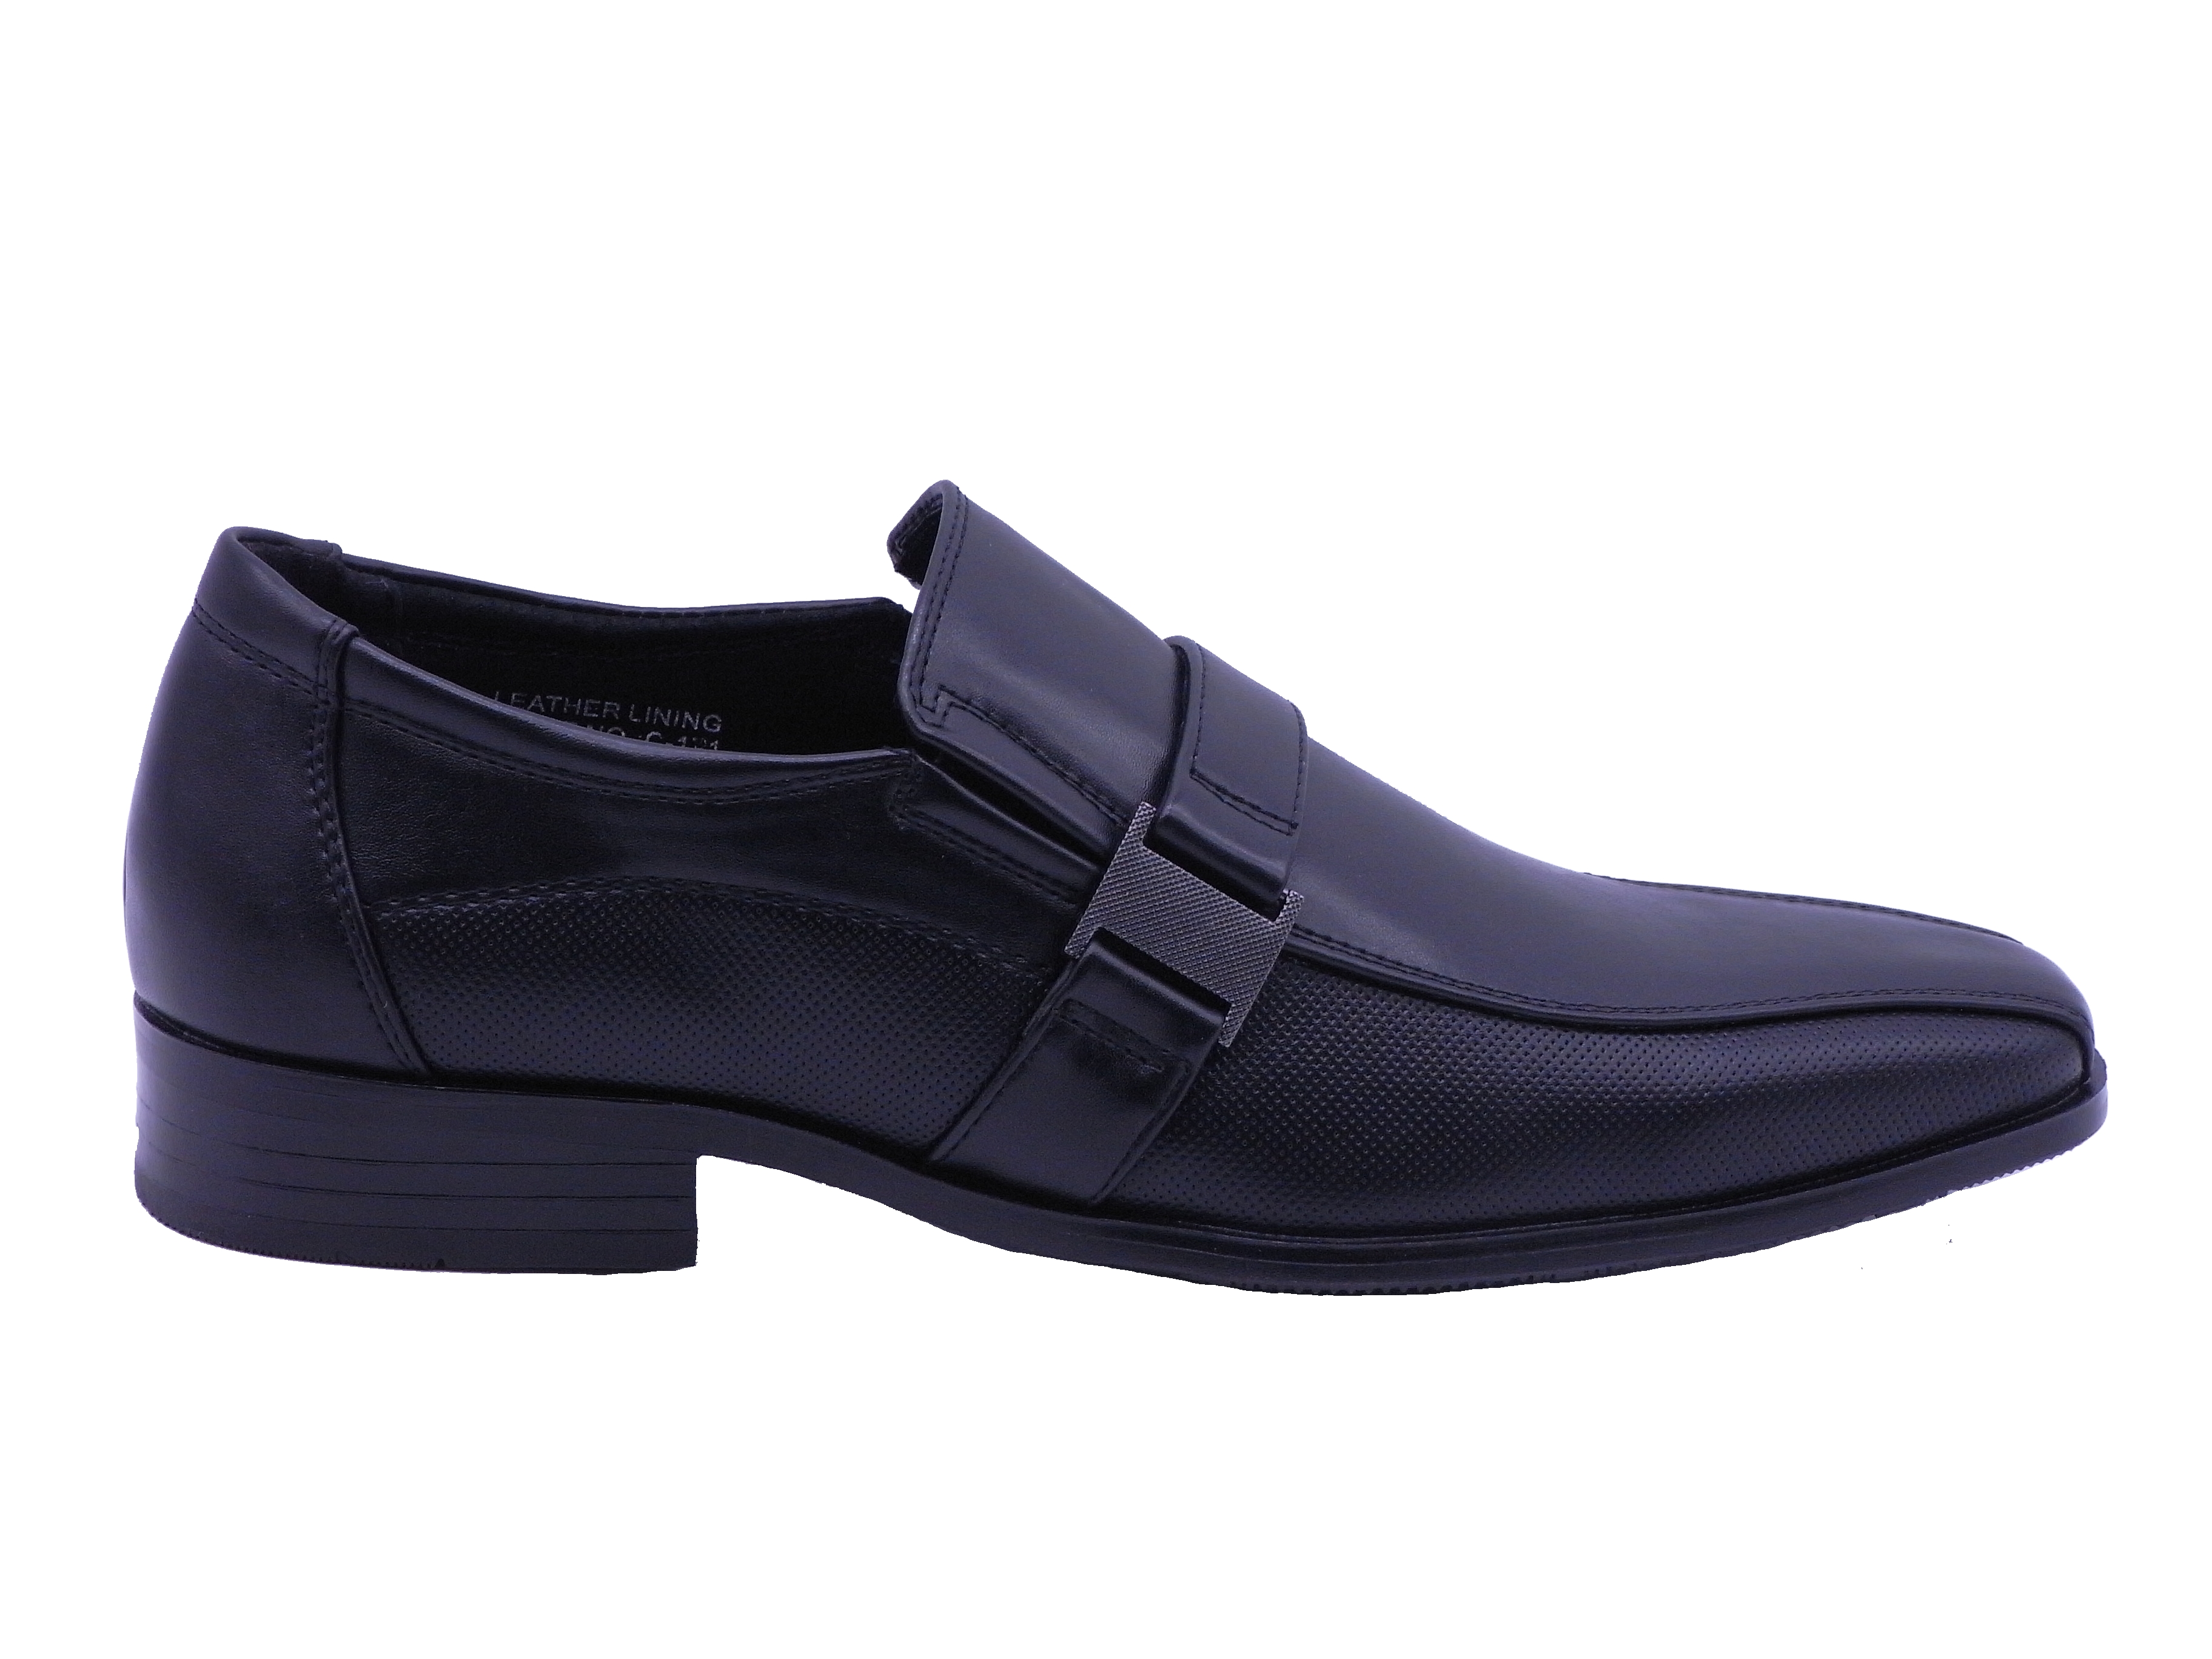 Men Shoes Slip On Strap Loafer Black Color Size US8 - image 2 of 5